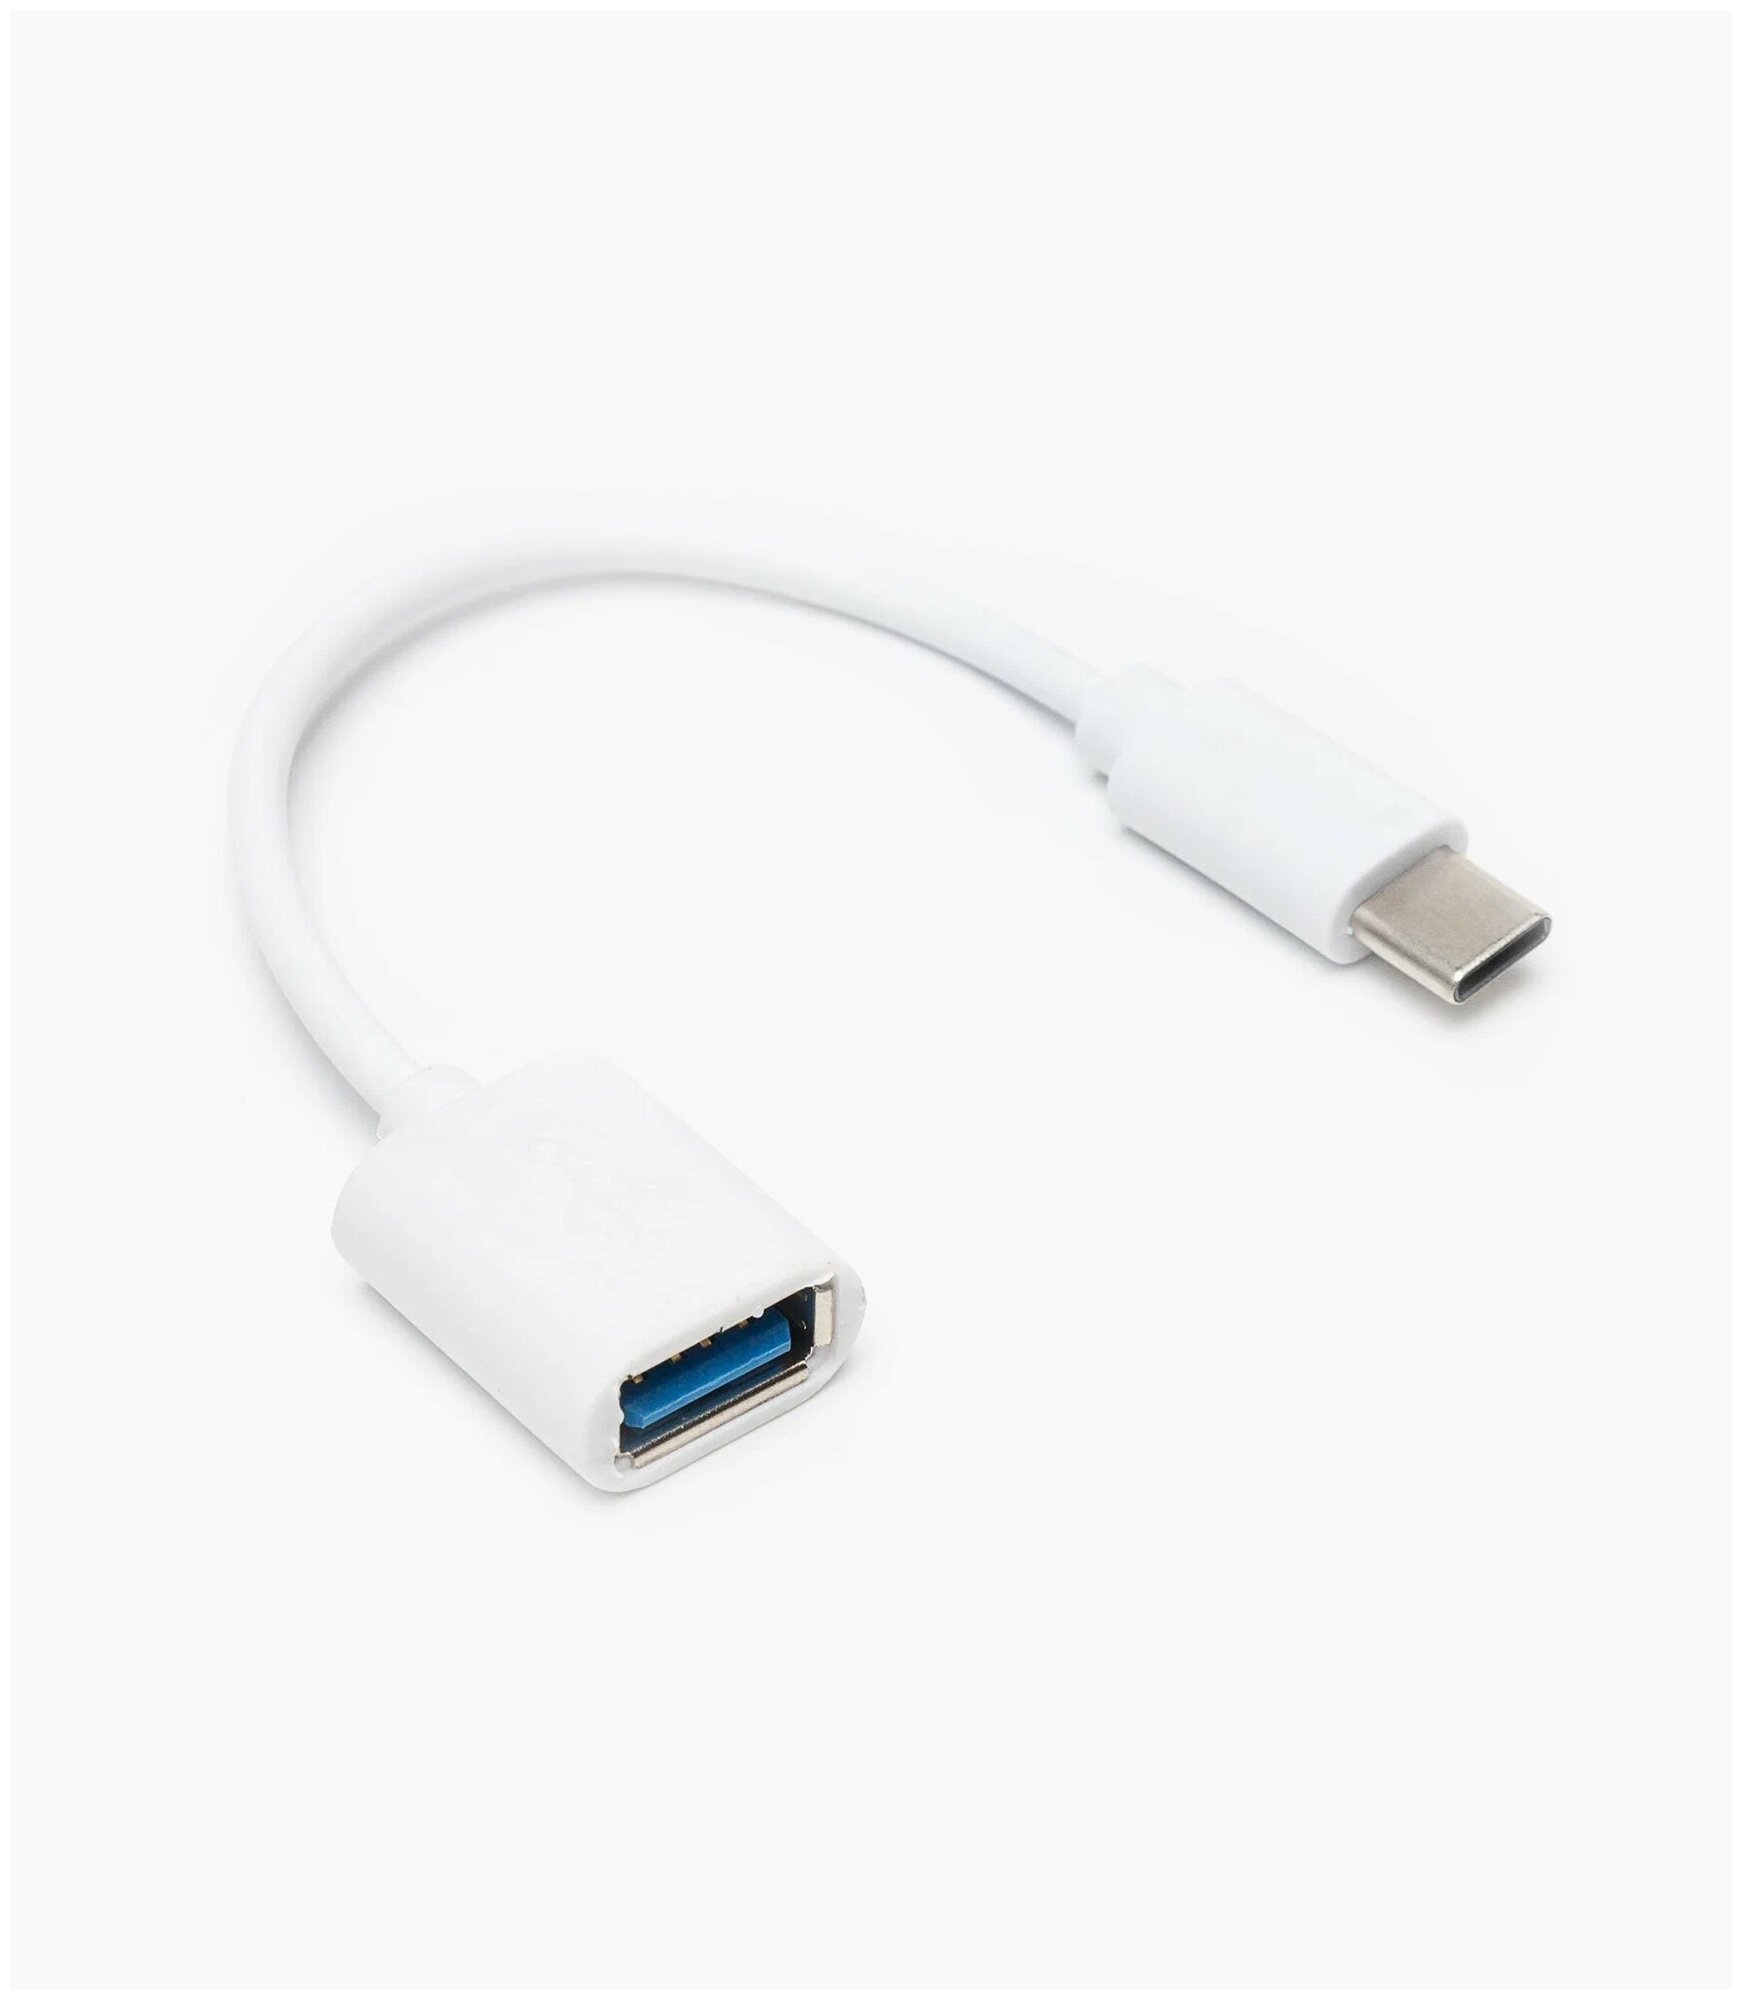 Переходник USB-A - Type-C для MacBook, юсб на тайпси, адаптер, OTG, для android, для телефона